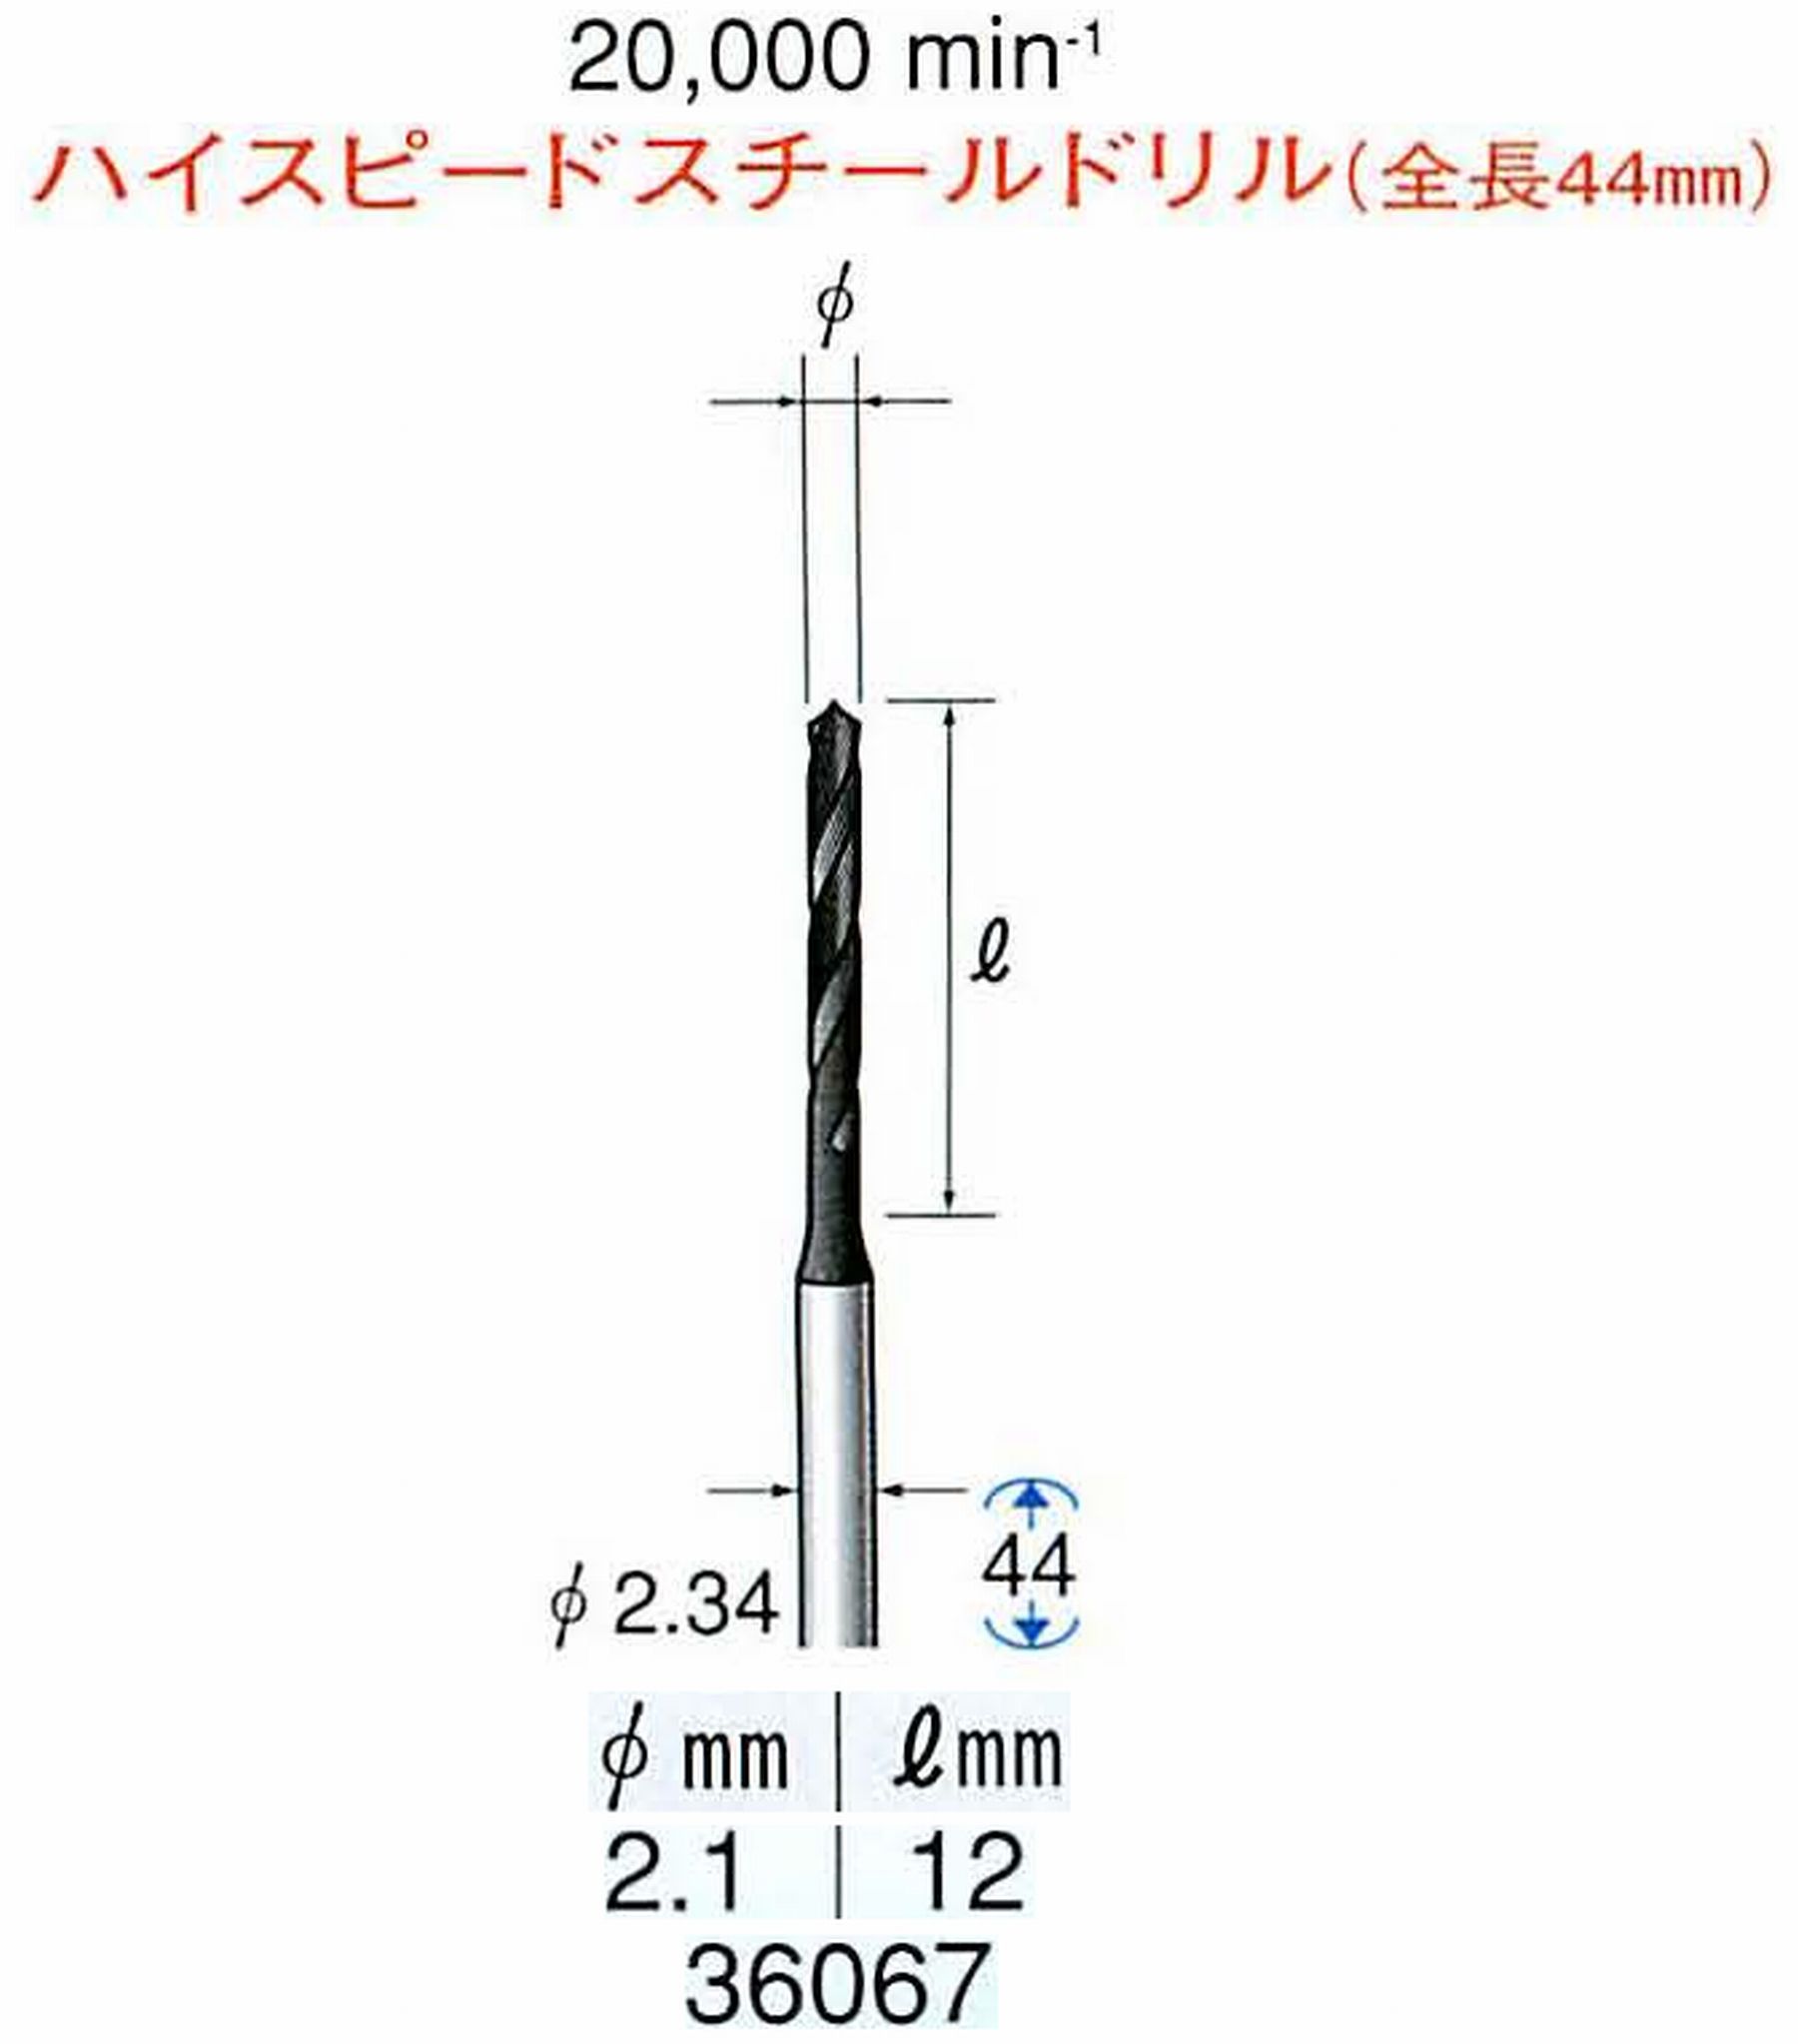 ナカニシ/NAKANISHI ツイストドリル ハイスピードスチール(H.S.S)ドリル(全長44mm) 軸径(シャンク) φ2.34mm 36067